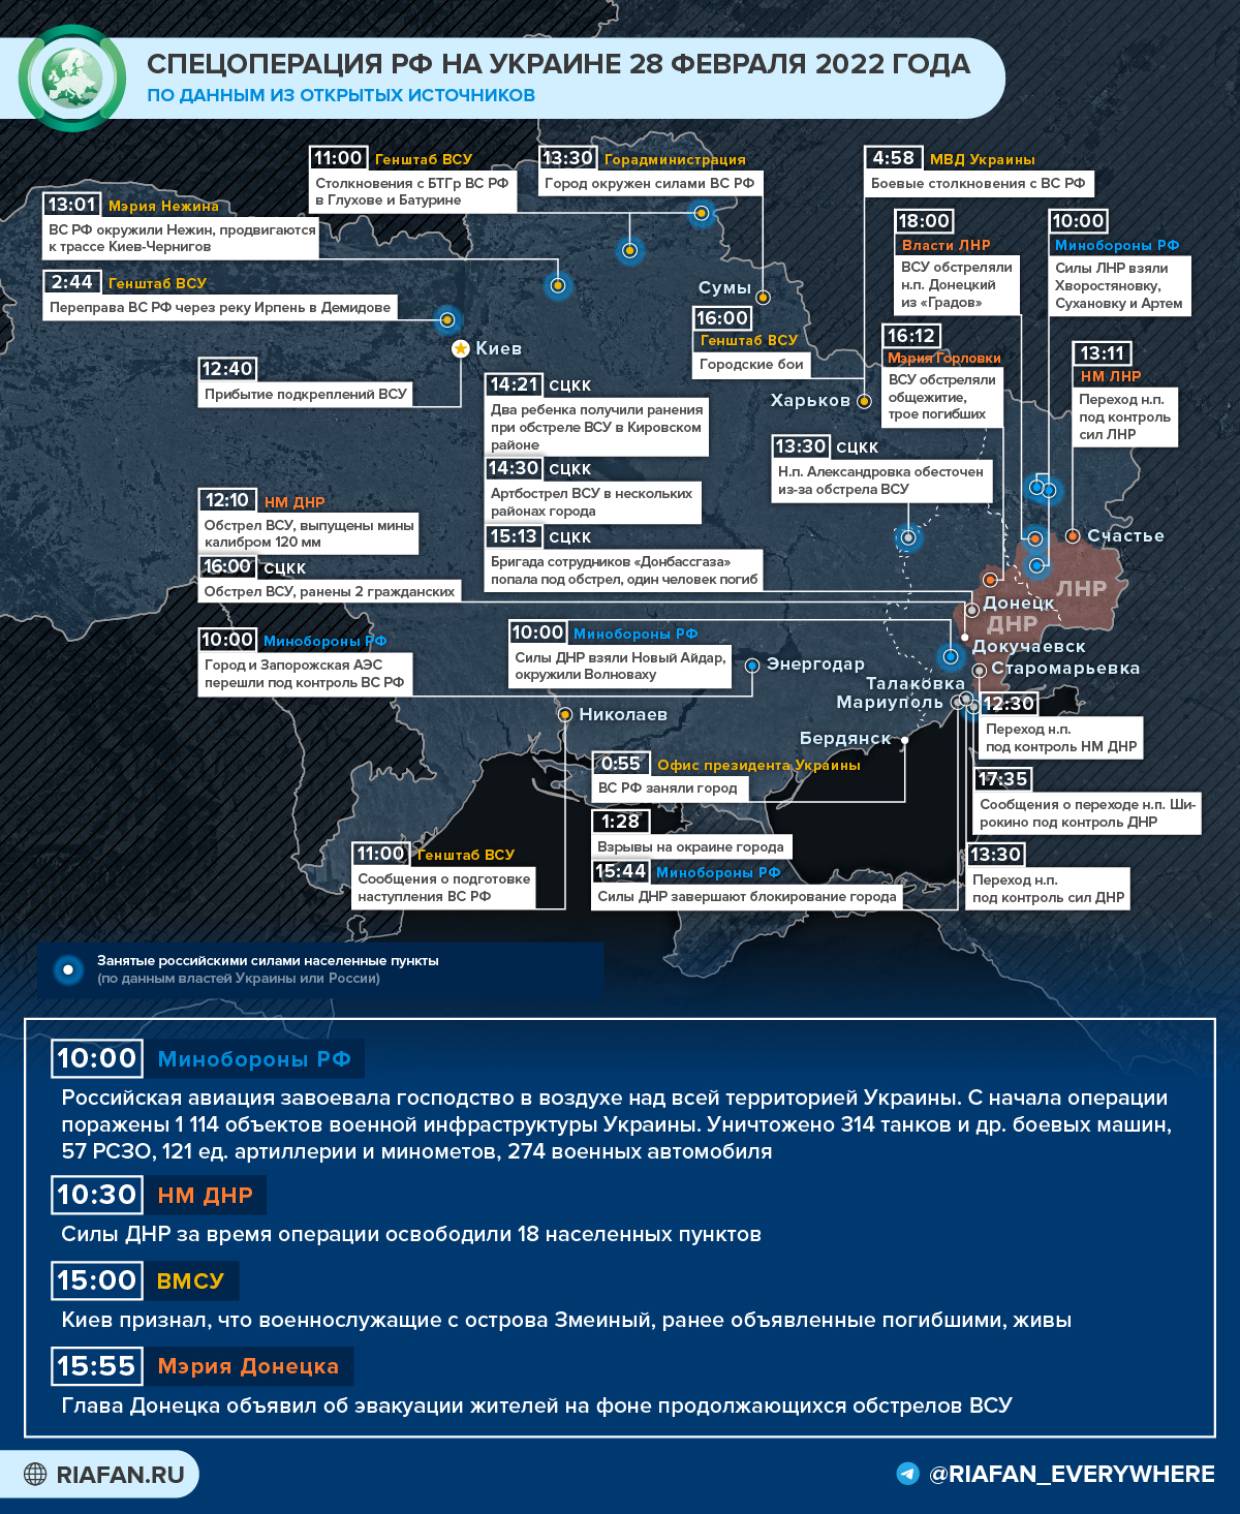 Господство России в воздухе и новые жертвы ВСУ: что произошло в Донбассе и на Украине 28 февраля